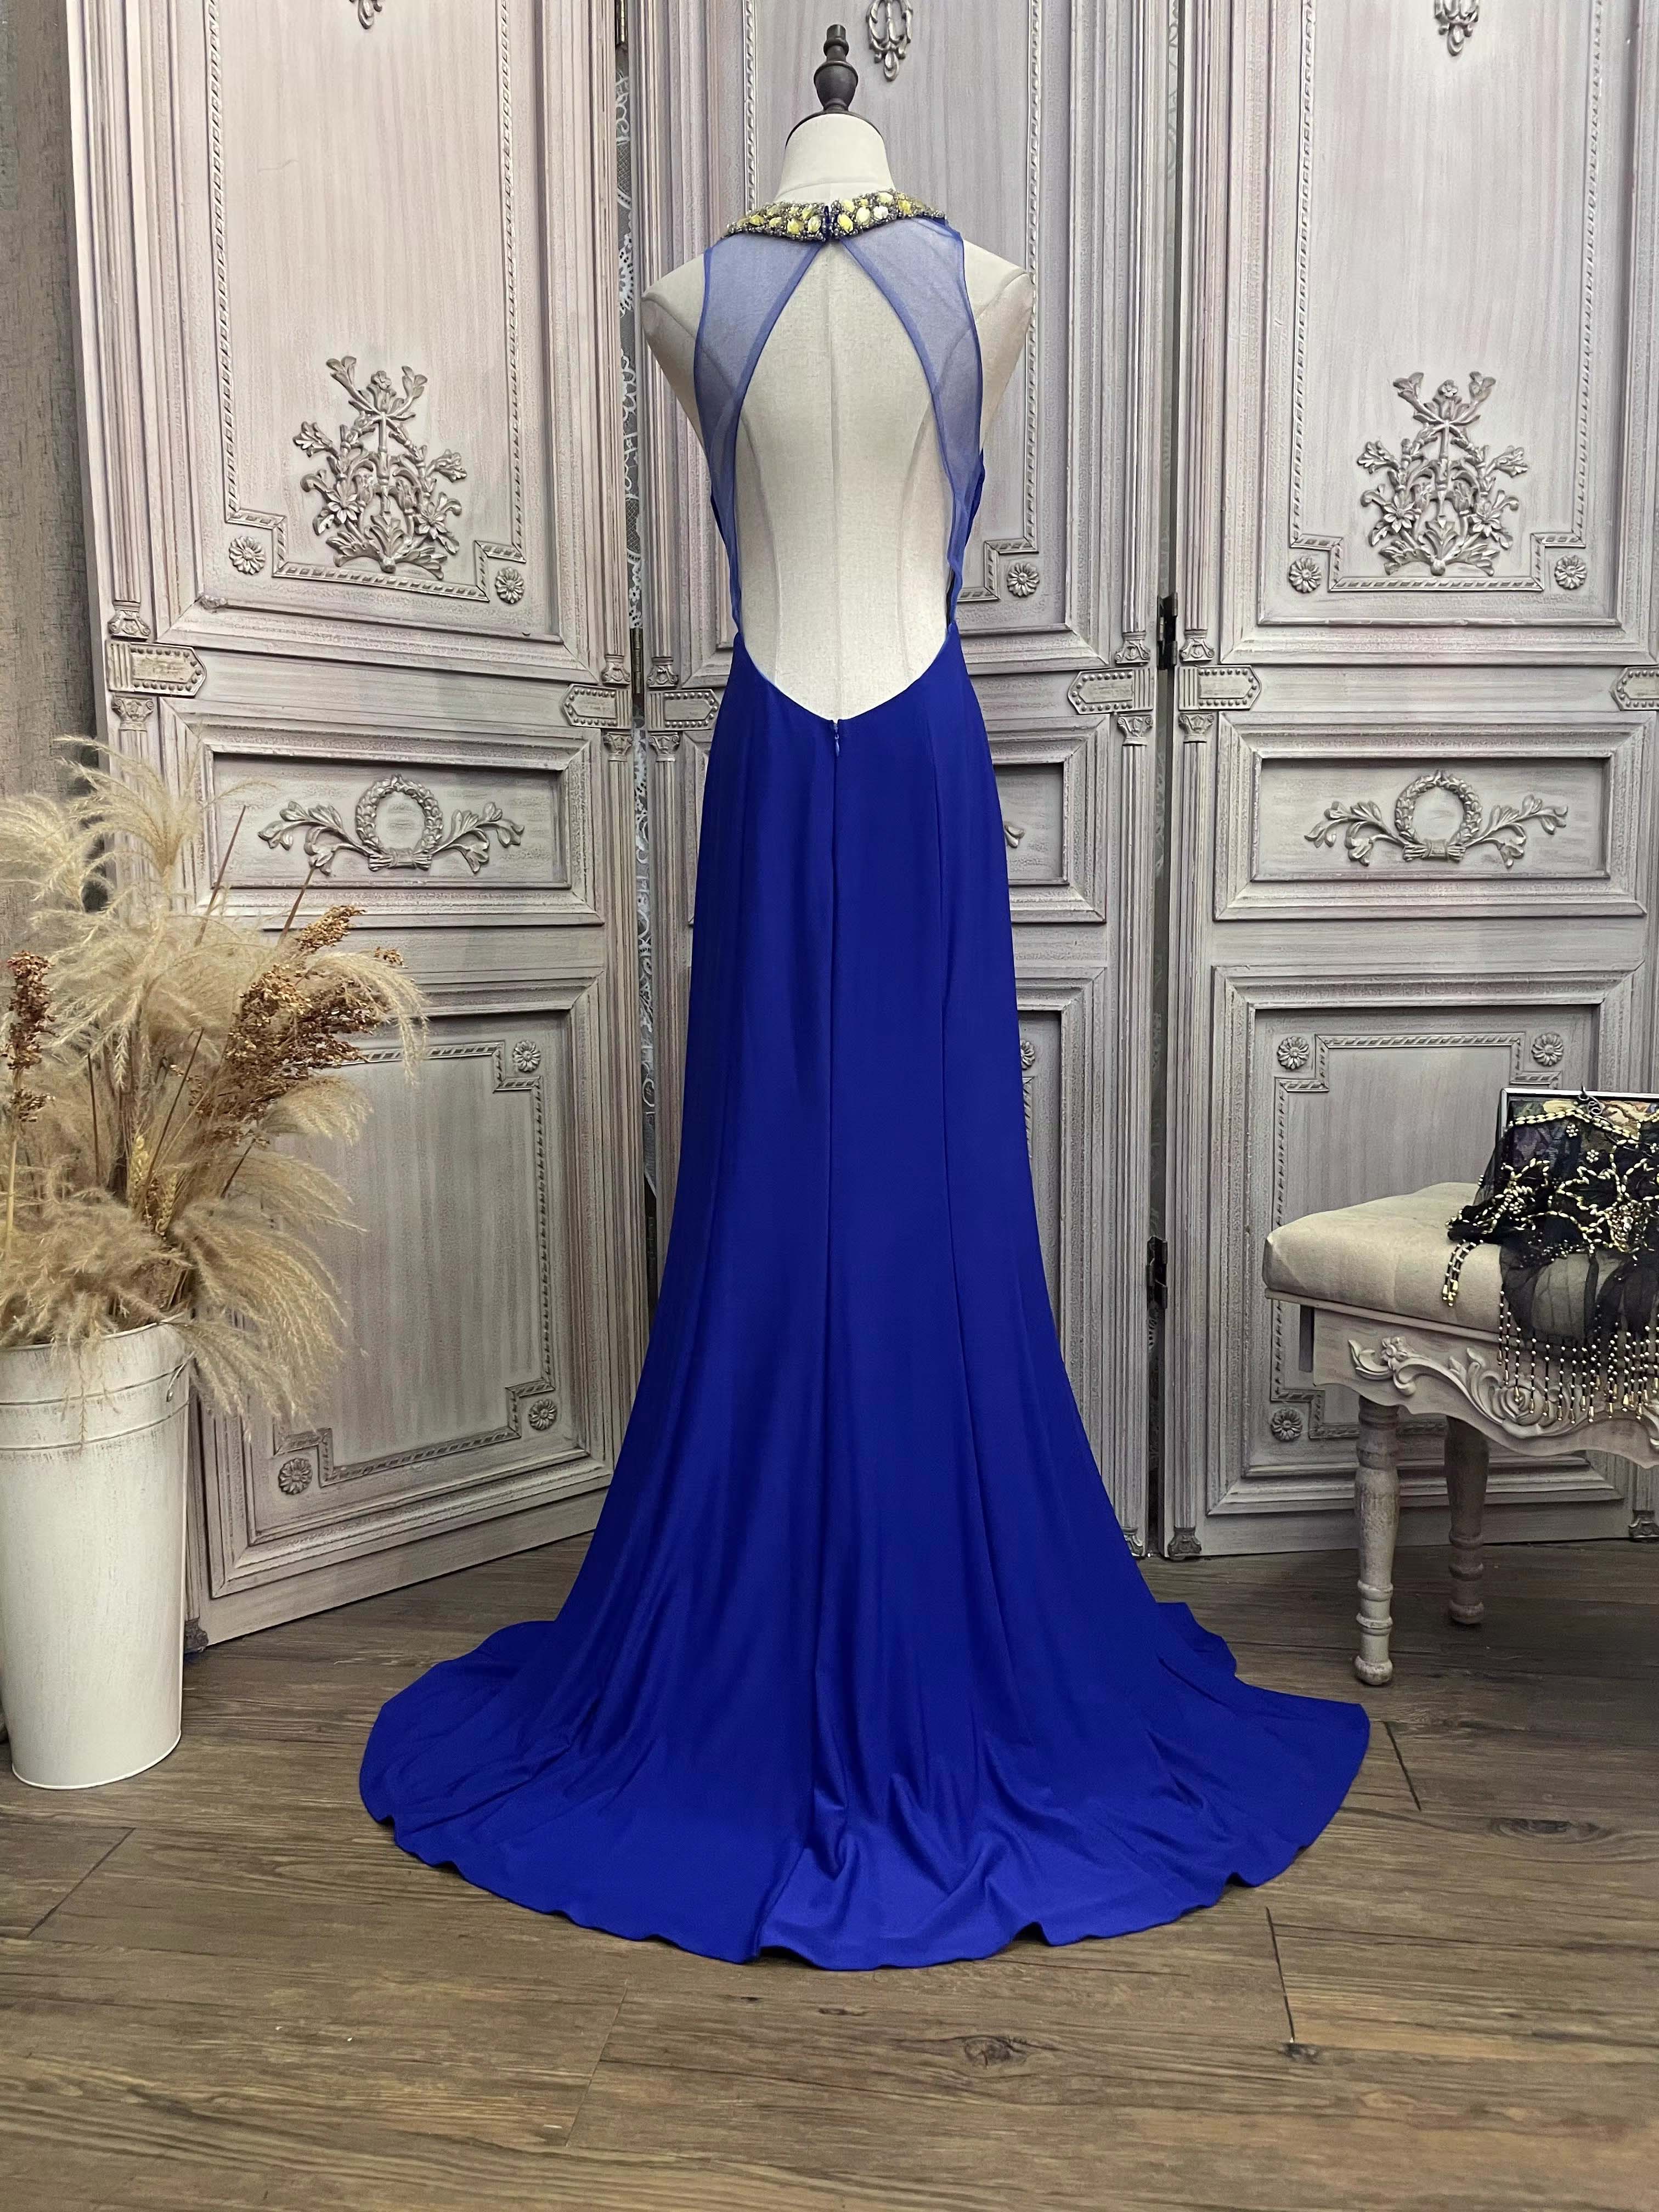 Slit Backless Evening Dress အင်္ကျီလက်ရှည် ကုမ္ပဏီ (၆)ခု၊